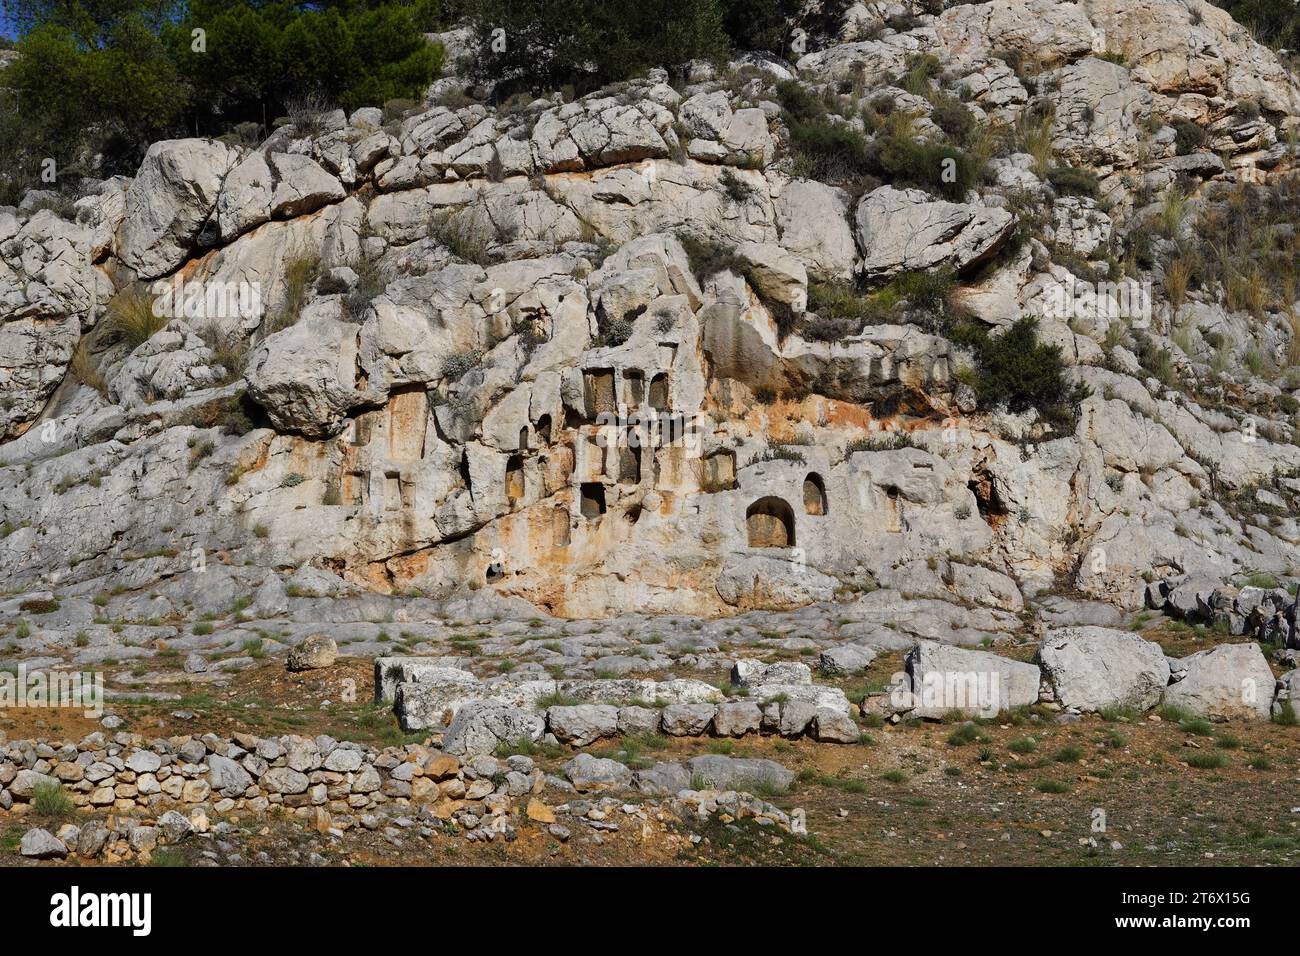 Ruinen des antiken Tempels der Aphrodite oder Venus in Attika, Griechenland. Die Löcher auf dem Felsen dienen der Göttin als Opfer für Liebe und Fruchtbarkeit Stockfoto